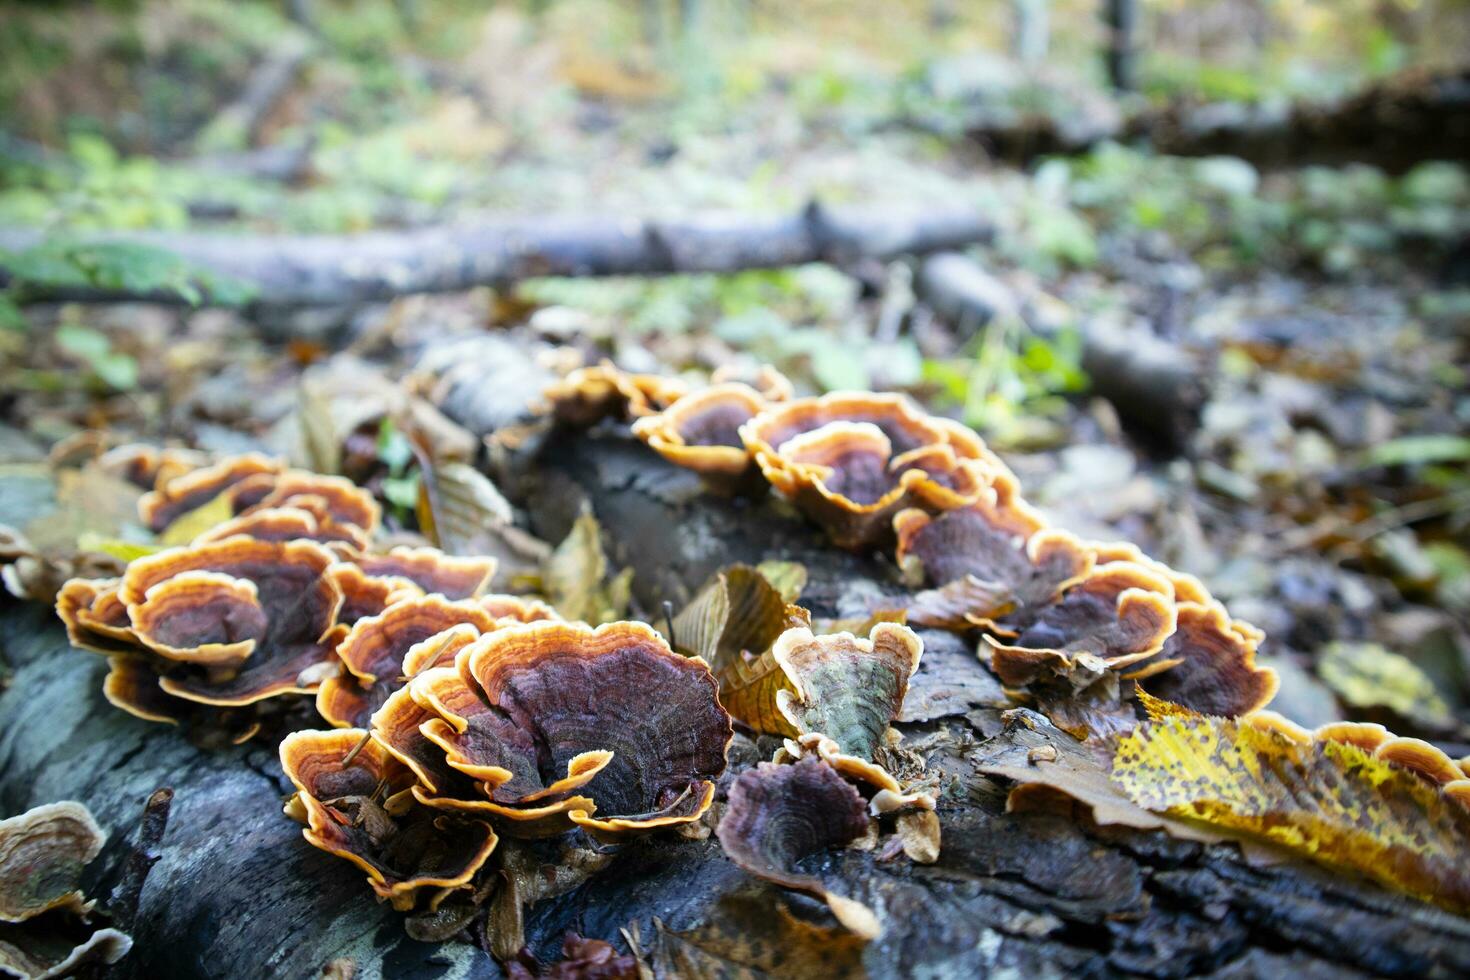 Variety of Inonotus mushroom photo